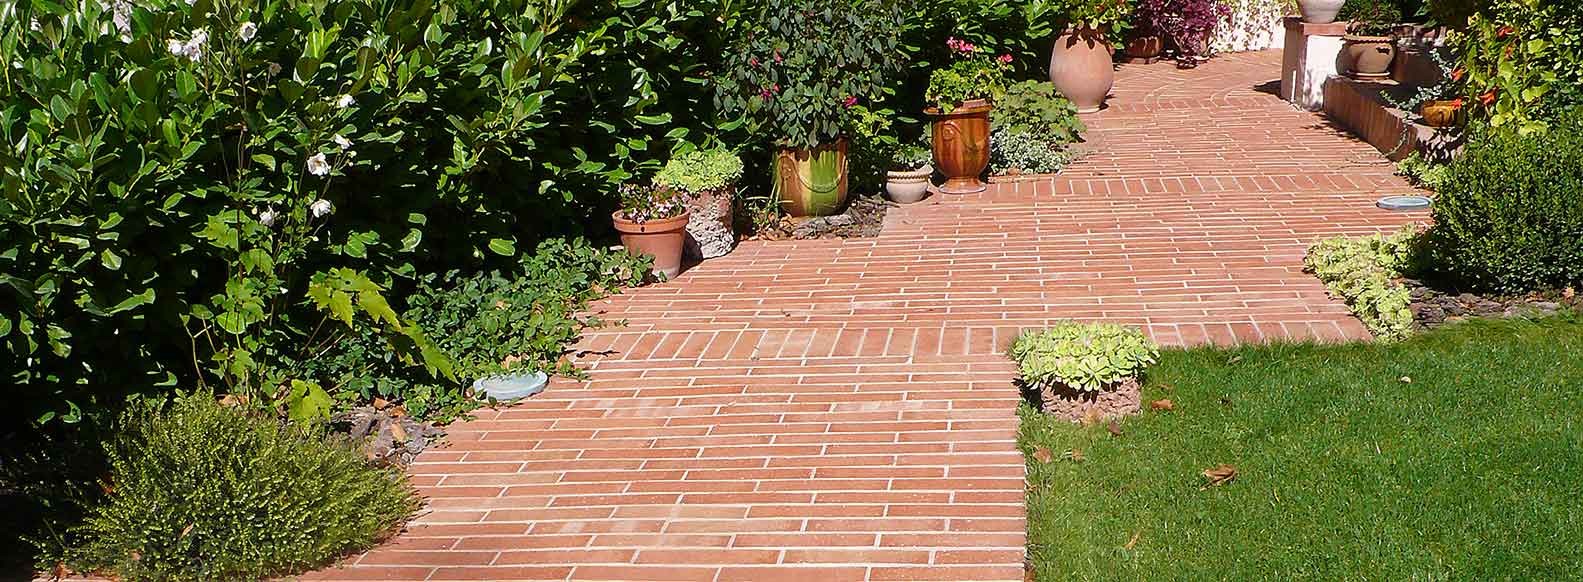 Creating a brick garden path